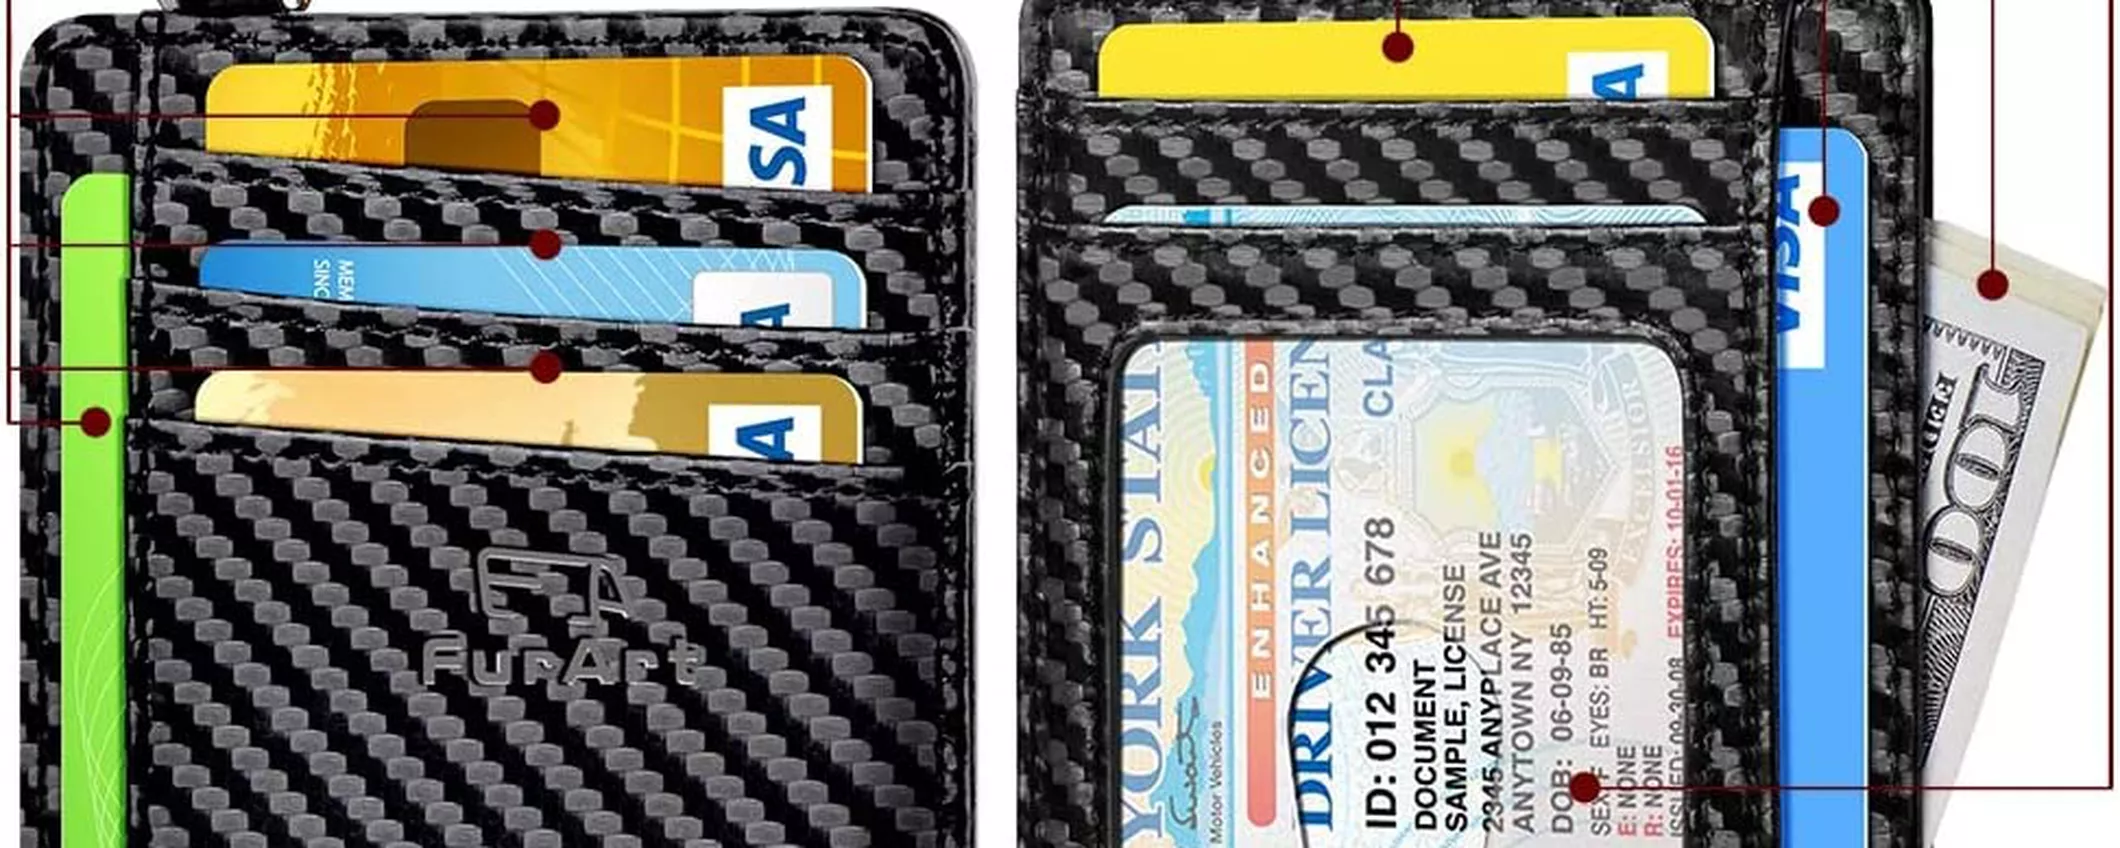 Porta carte di credito con BLOCCO per i ladri: a 13€ è da avere